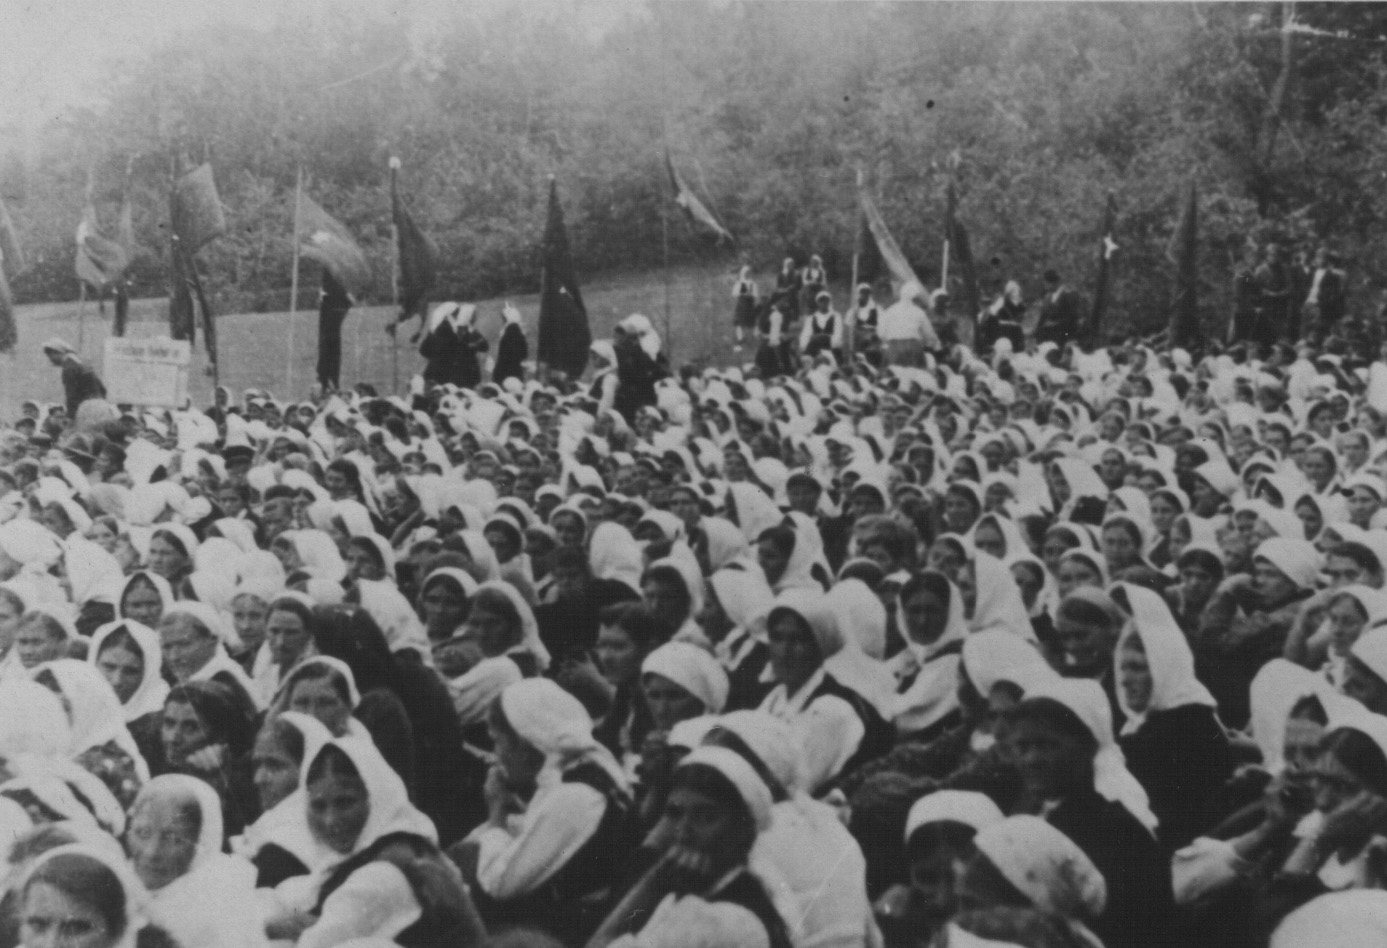 Na današnji dan 1942. godine osnovan je AFŽ (Antifašistički front žena) u Bosanskom Petrovcu. Ta organizacija bila je najveća i najprogresivnija ženska organizacija na prostorima Jugoslavije. Istog dana održana je i Prva zemaljska konferencija žena, na kojoj je sudjelovalo 166 delegatkinja iz cijele Jugoslavije, koje su svoje djelovanje i život usmjerile na narodnooslobodilačku borbu. Tim pokretom, emancipirale su se žene iz cijele regije, a smatra se također da je tada postavljen temelj rodnoj ravnopravnosti ovih prostora.<br>
<br>
Na slici je zbor AFŽ-a u Drvaru 1942. godine.